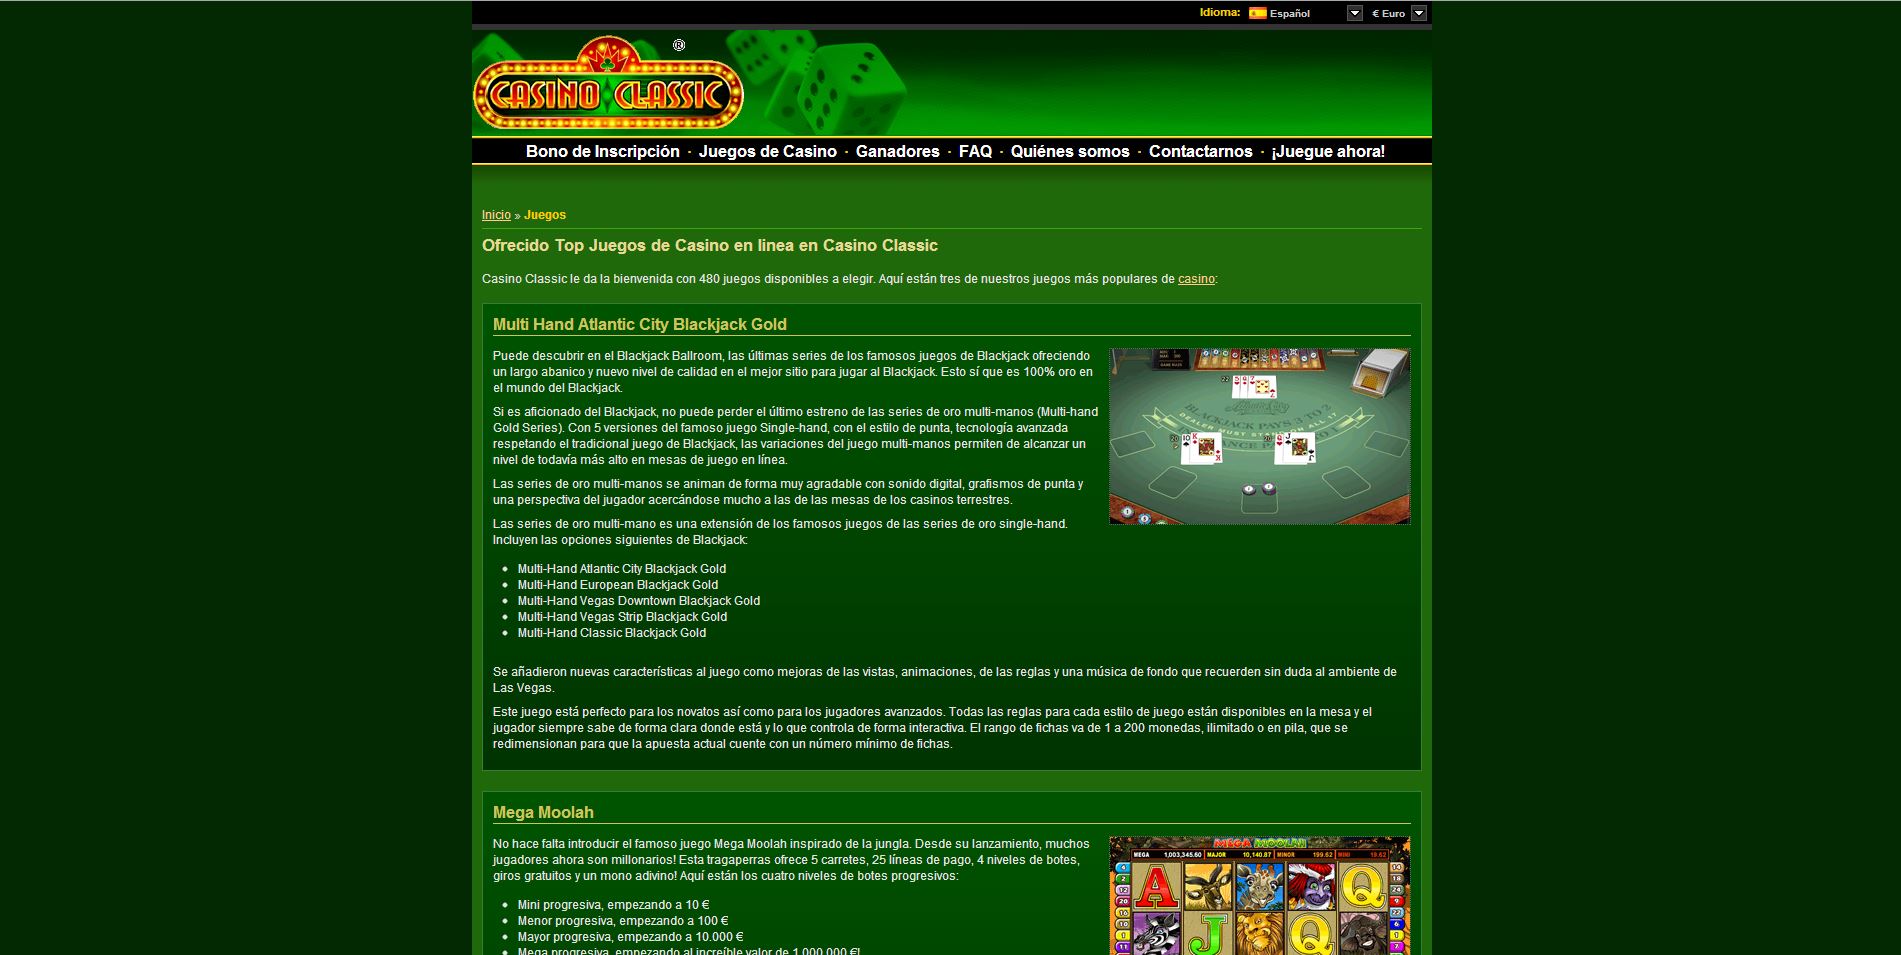 Juegos Tropezia Palace como sacar probabilidades en el poker - 61774